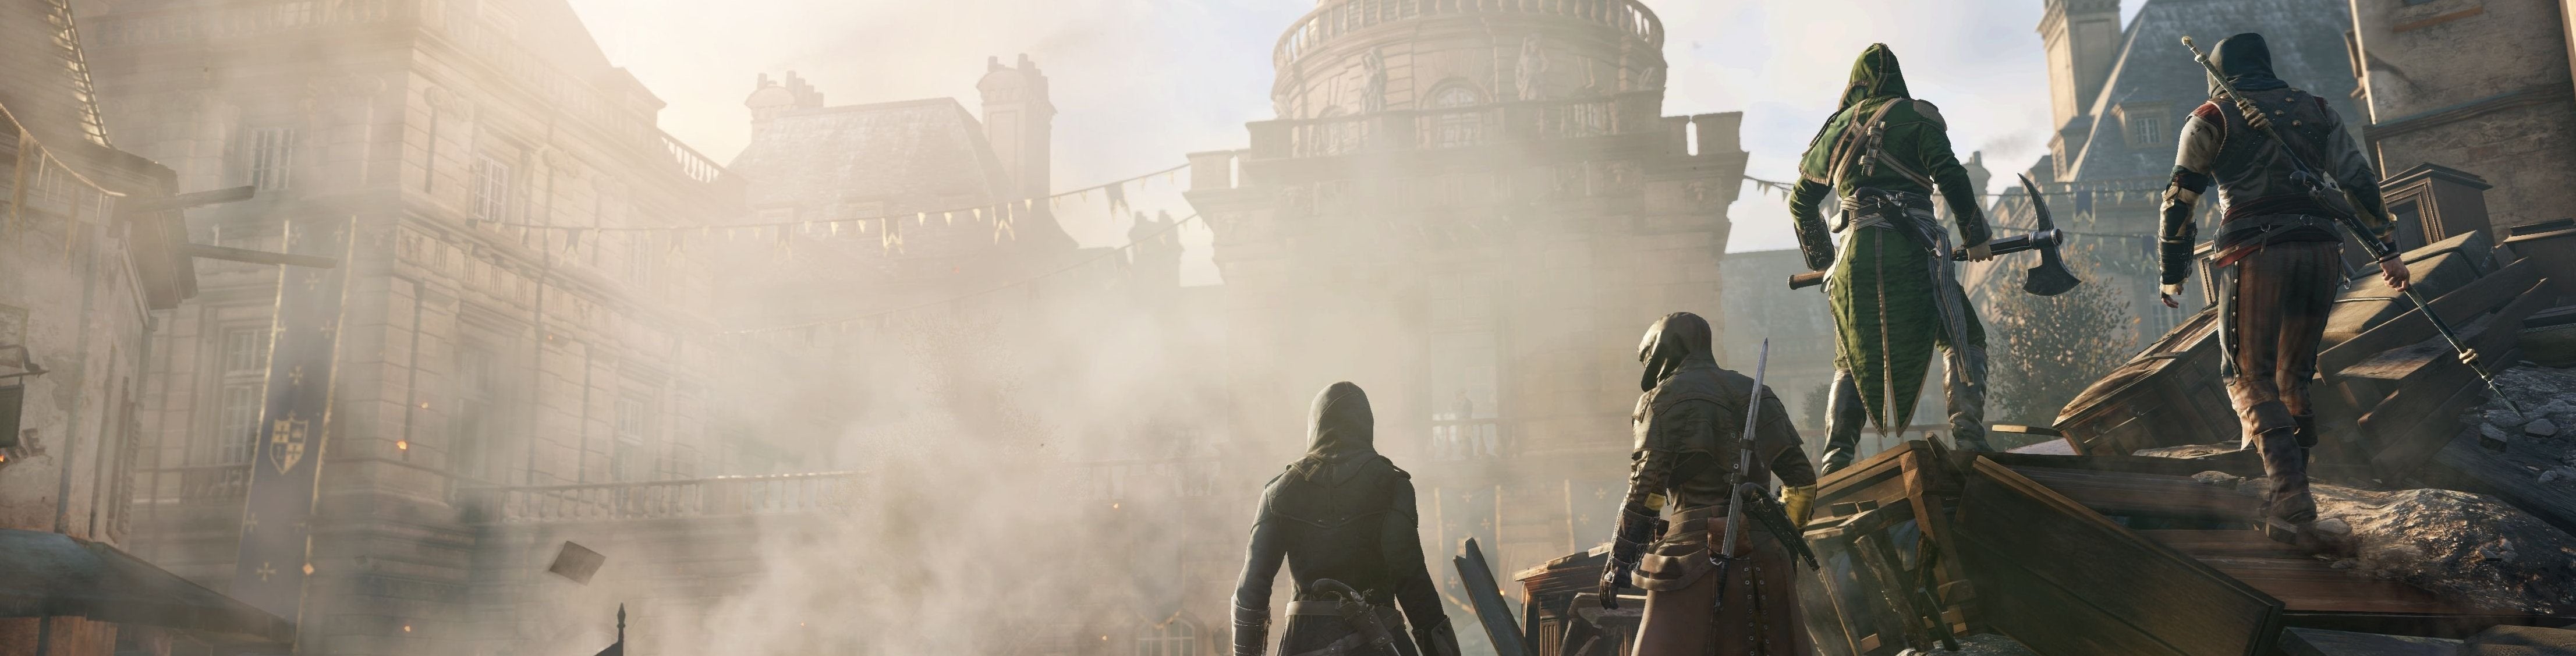 Afbeeldingen van Patch 4 voor Assassin's Creed Unity uitgesteld